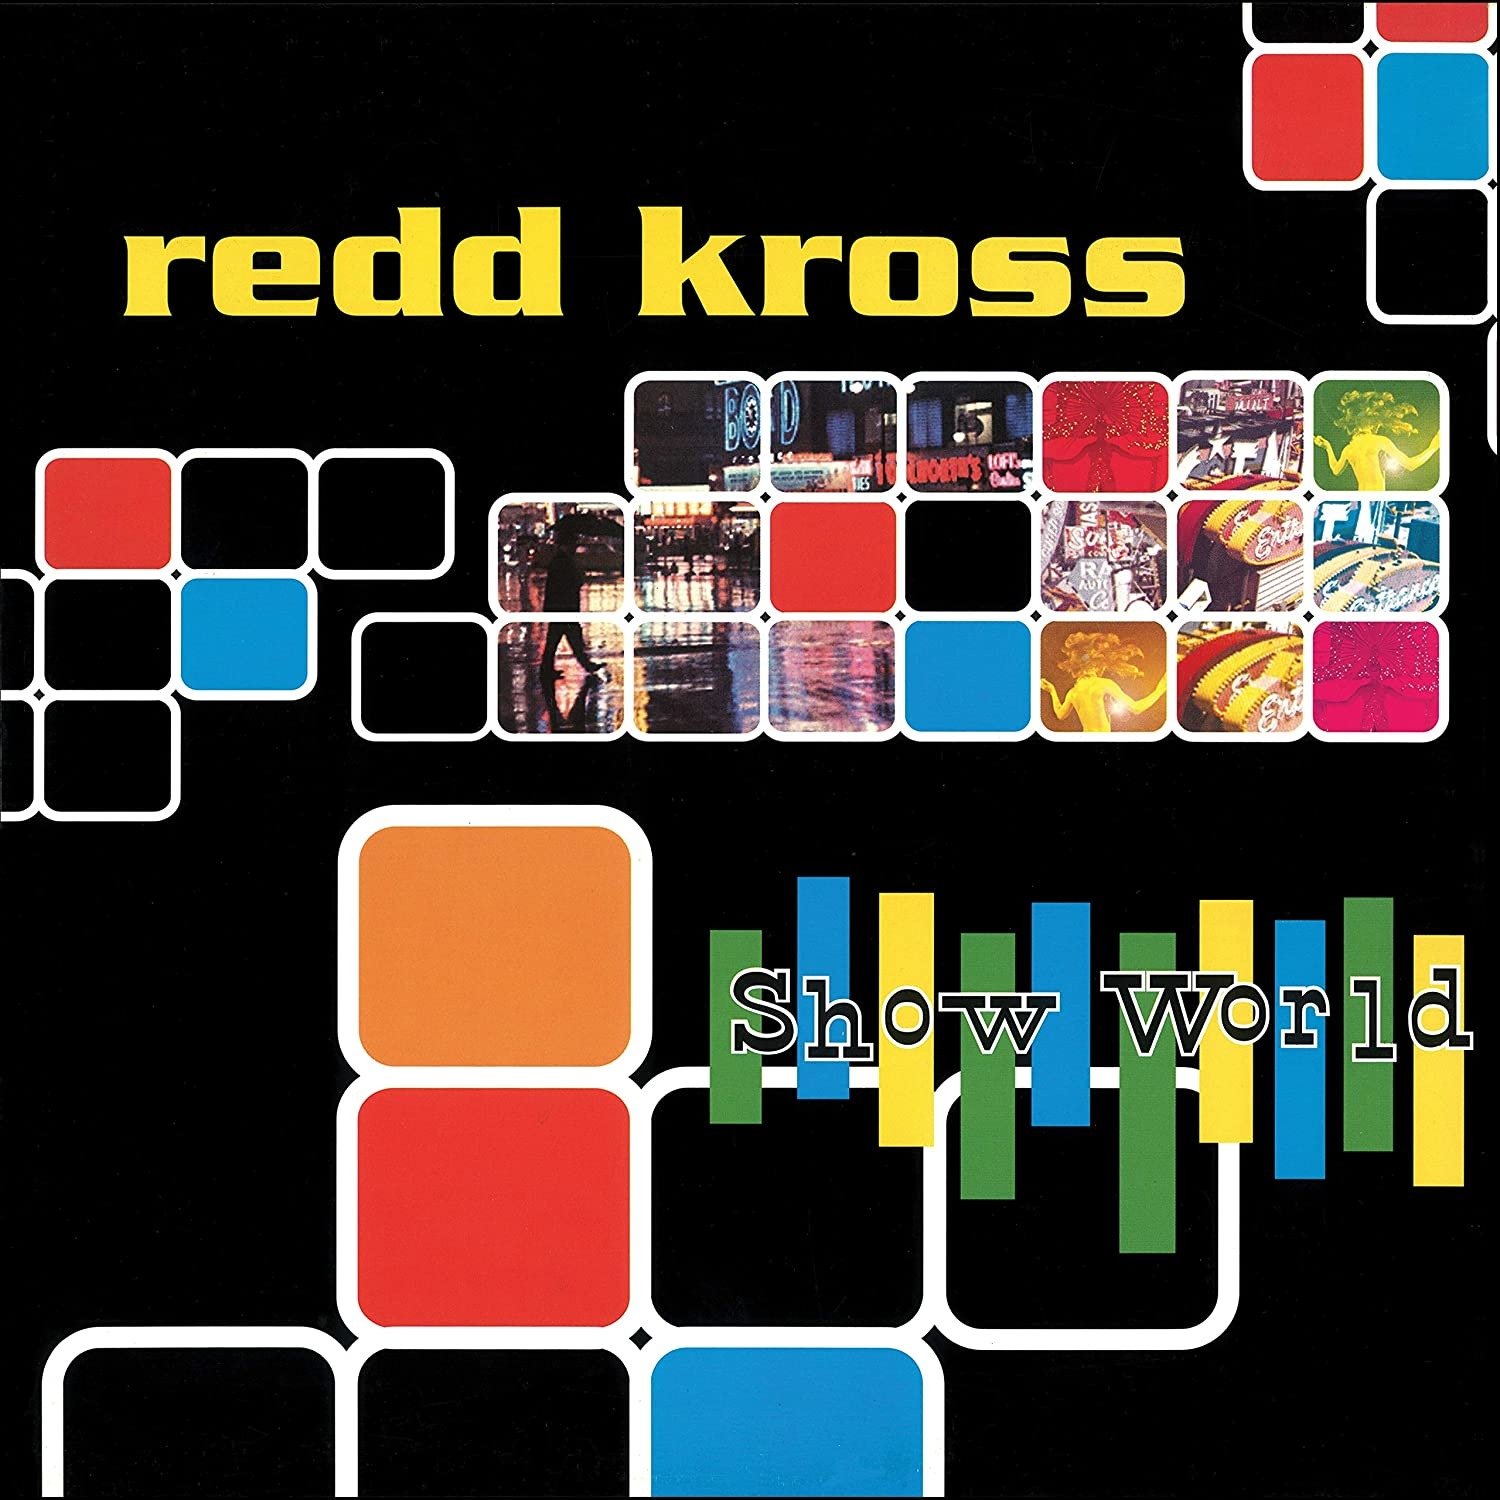 CD Shop - REDD KROSS SHOW WORLD